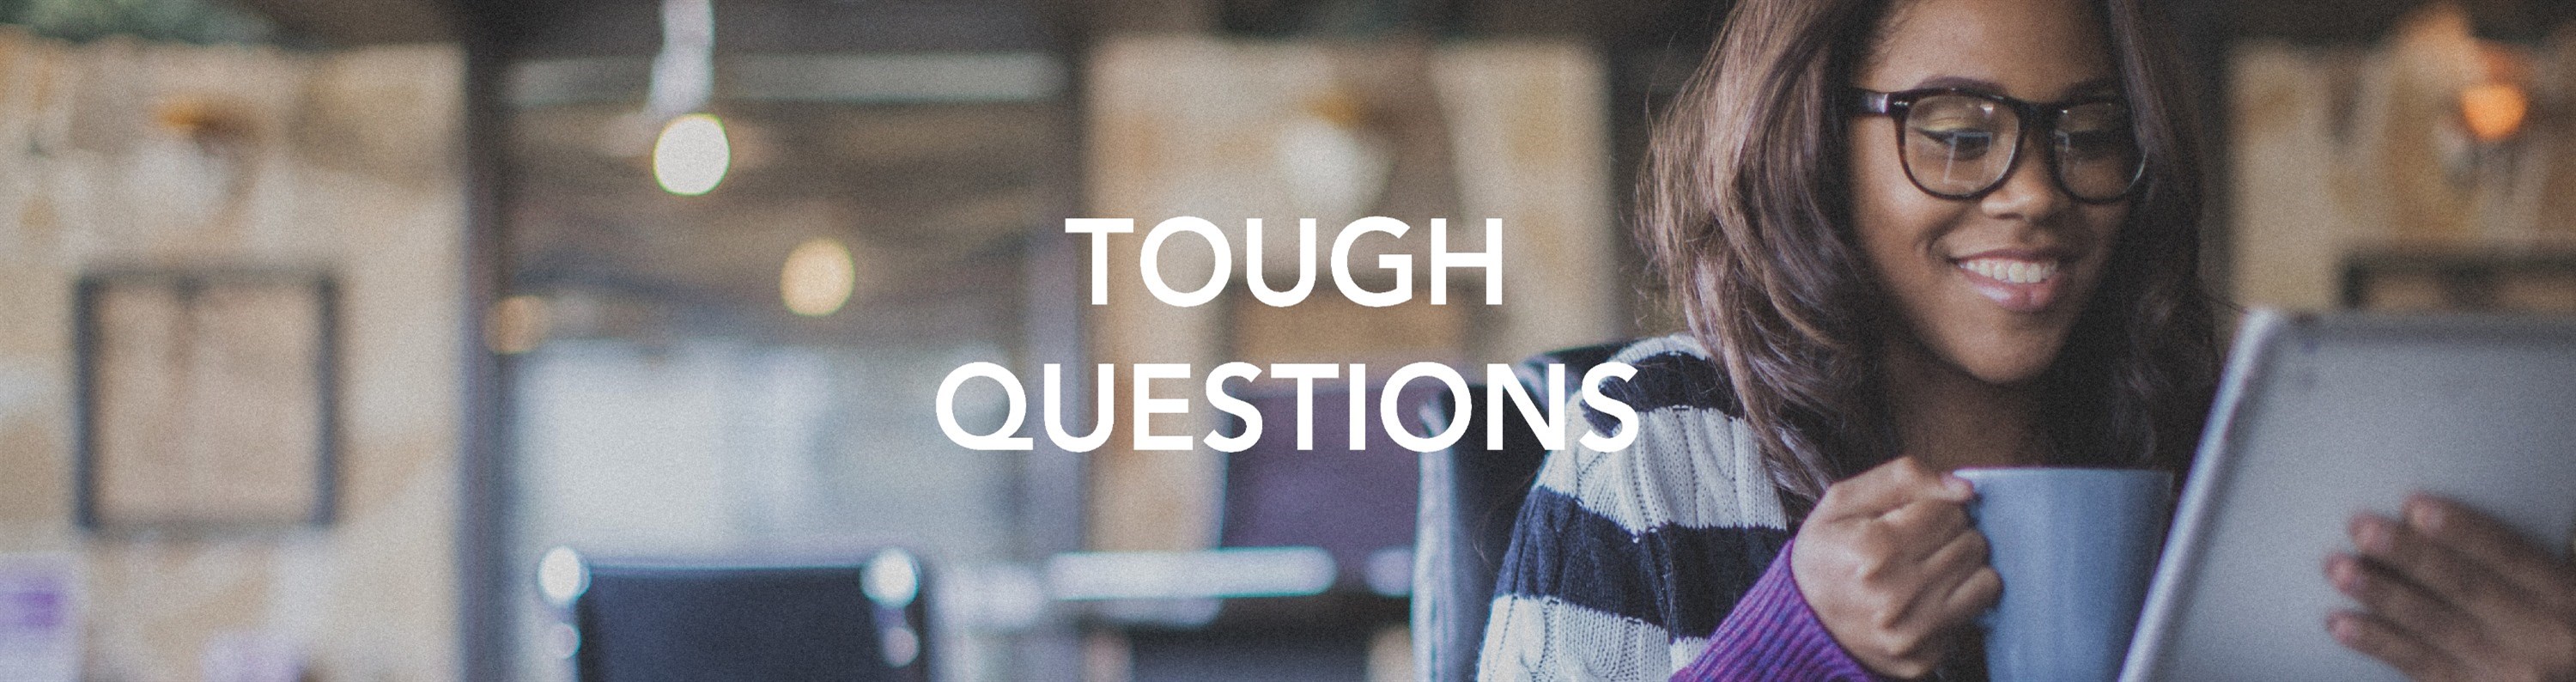 banner-tough-questions